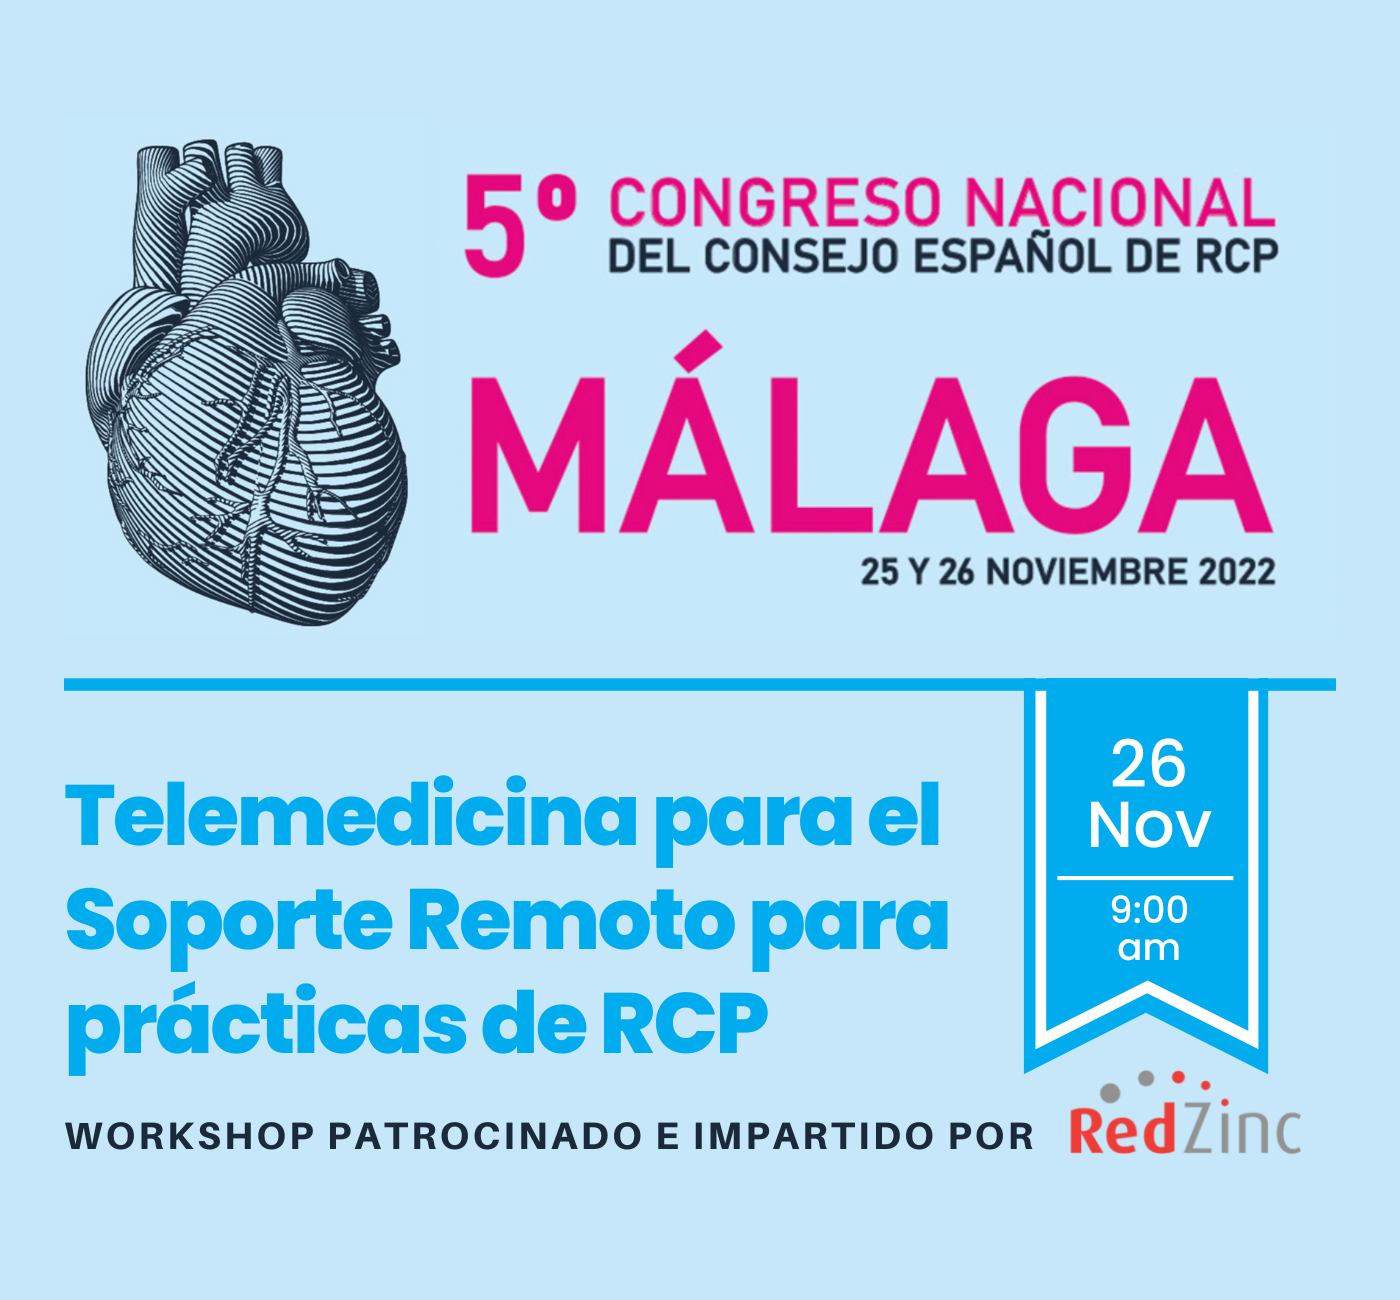 workshop-Patrocinado-e-impartido-por-3 RedZinc en el V Congreso Nacional del CERCP | RedZinc Services